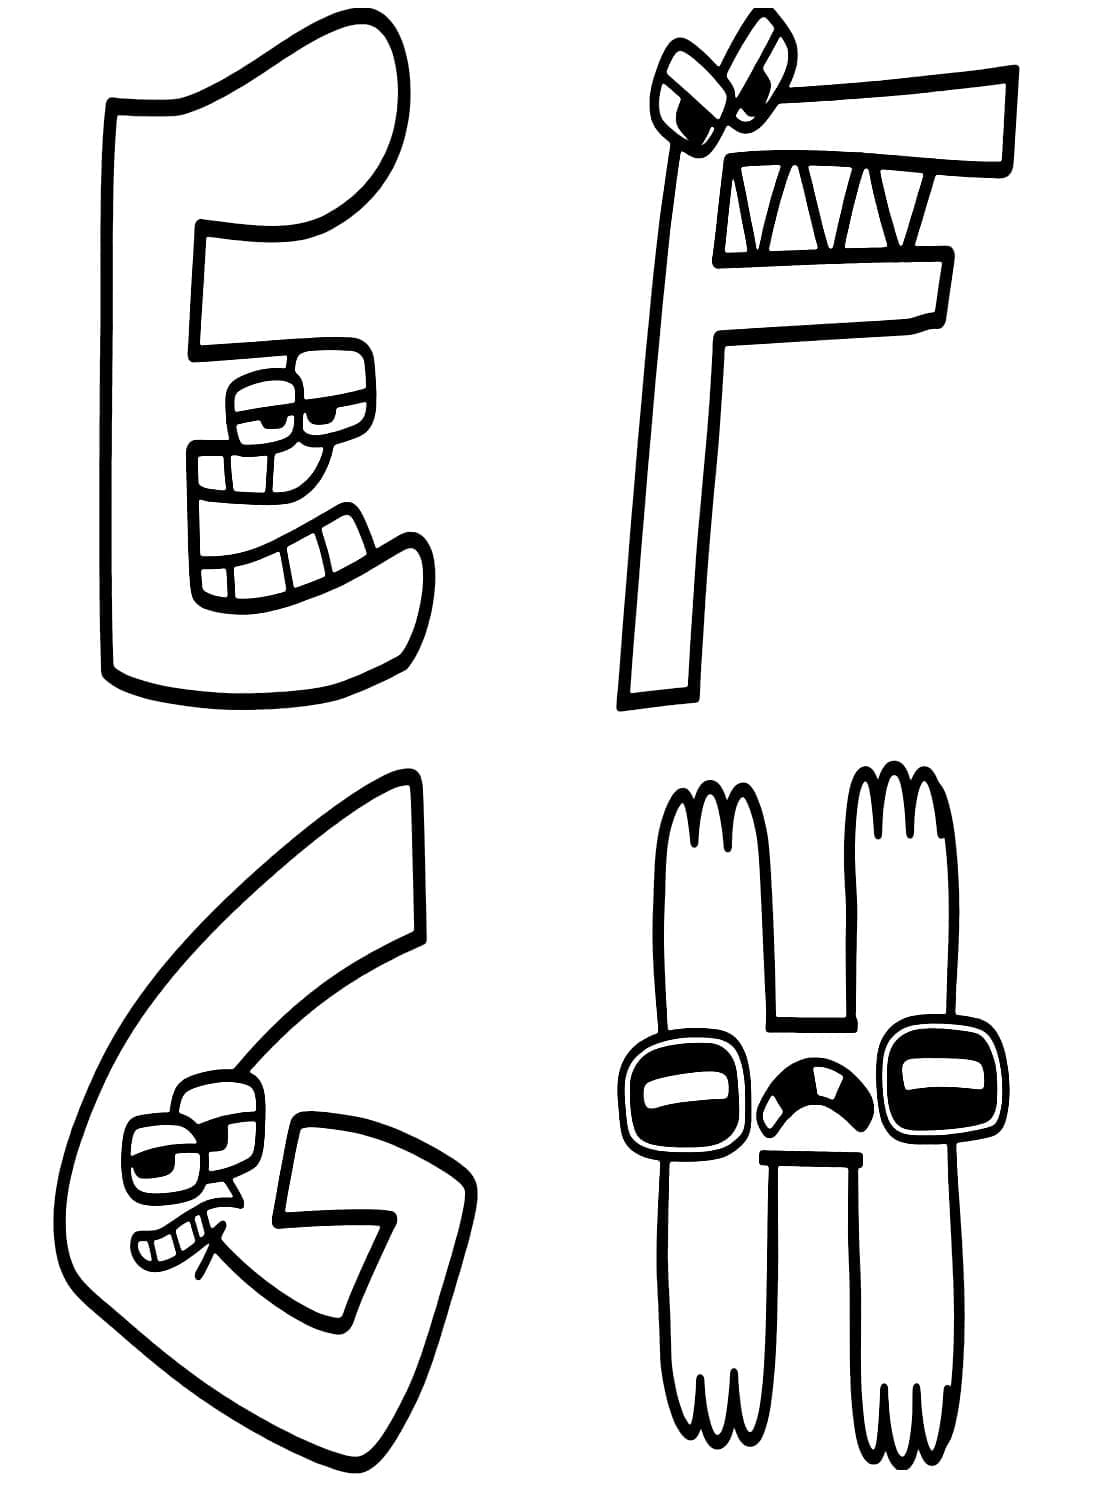 Dibujos de E F G H Alphabet Lore para colorear